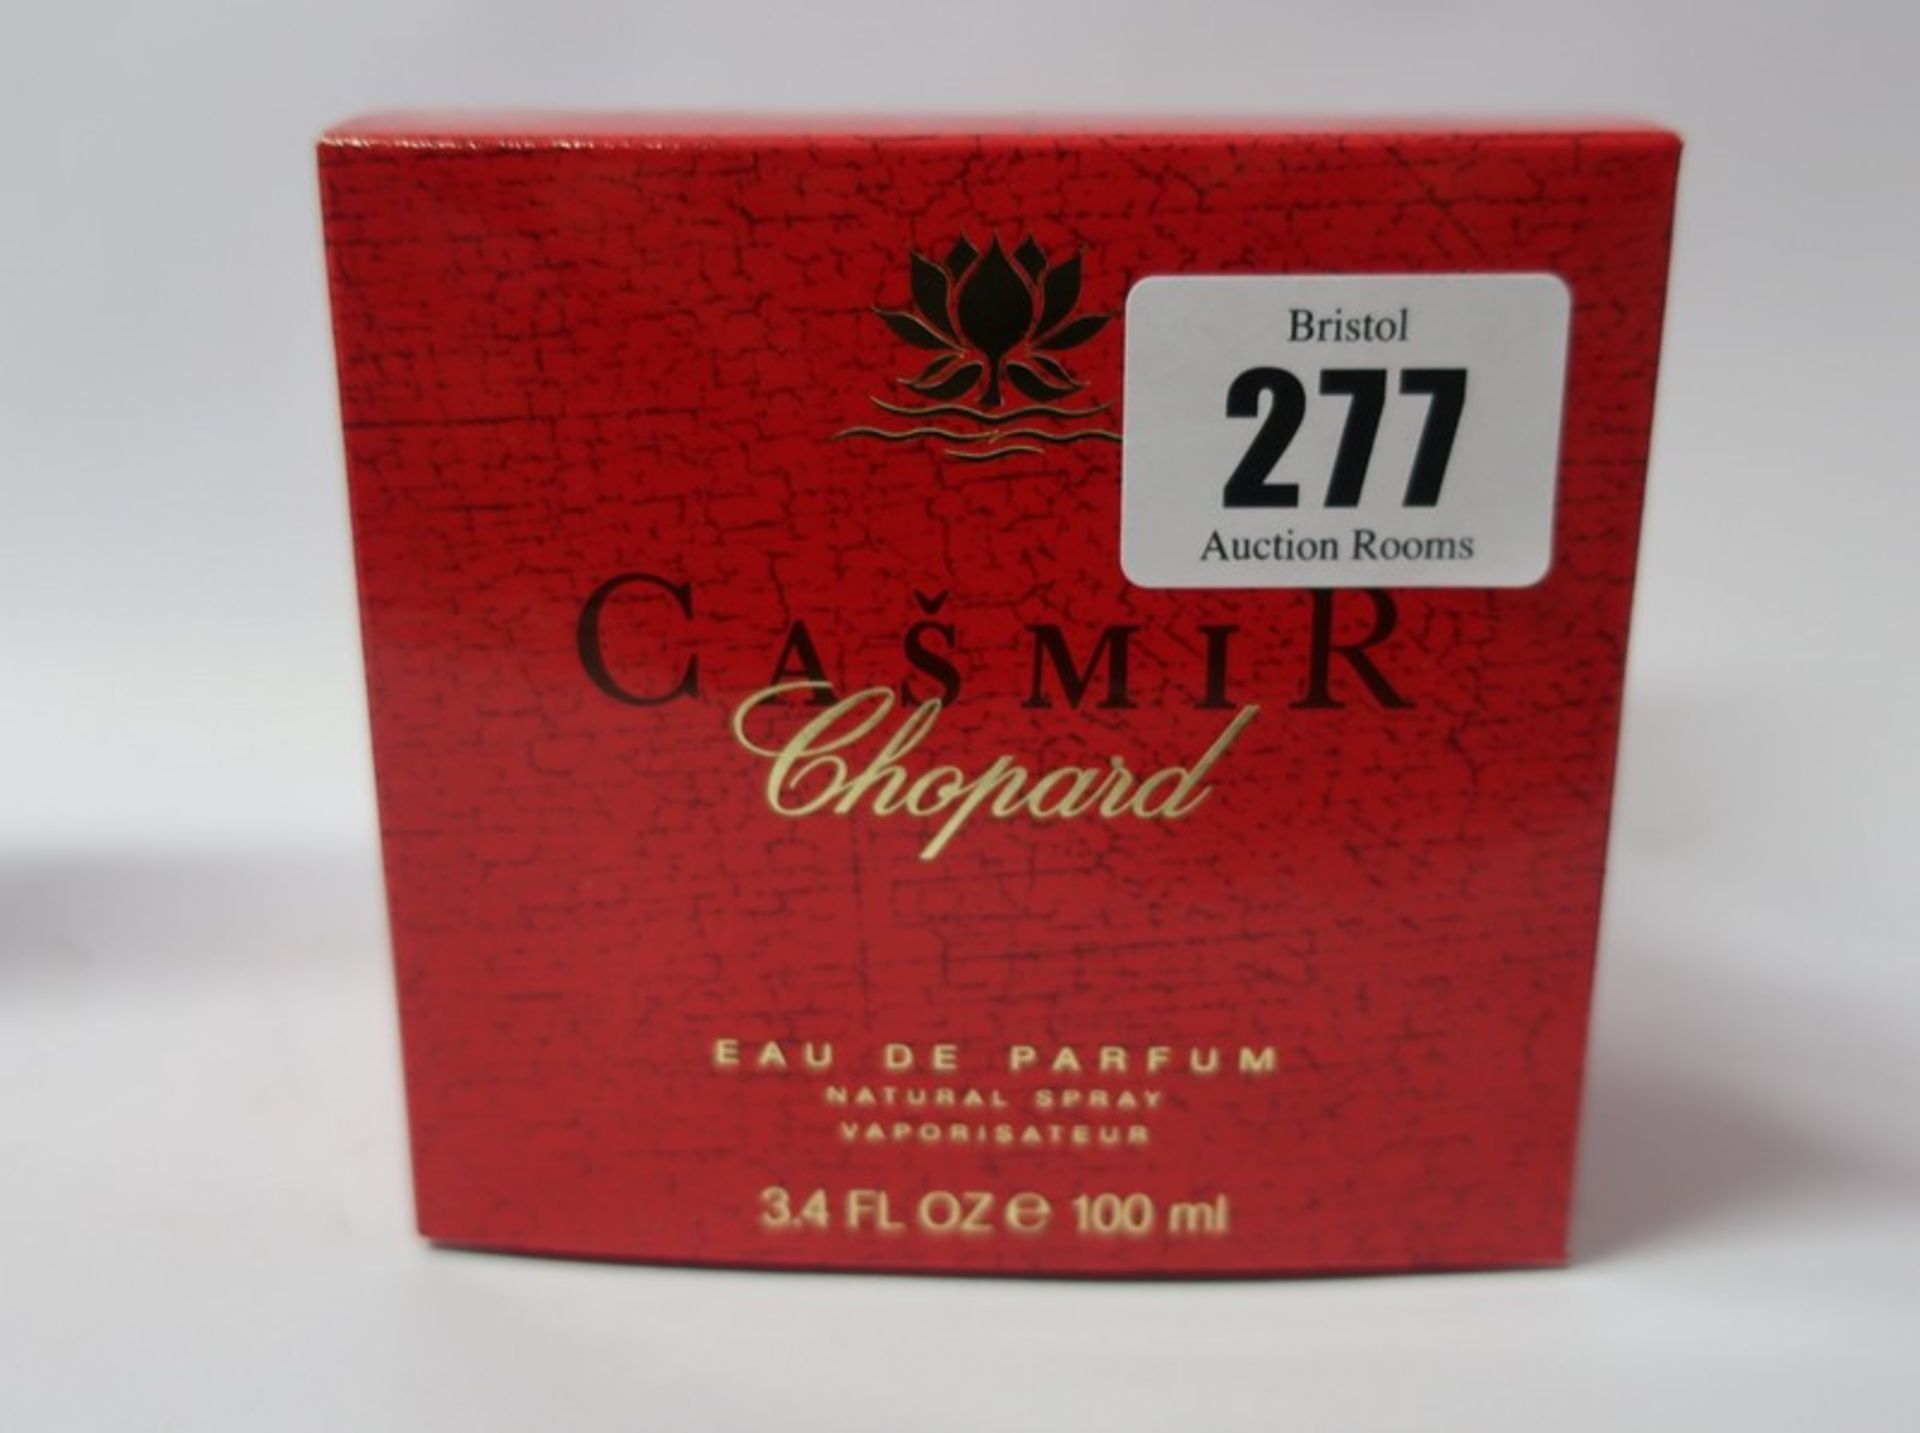 Six Chopard Casmir eau de parfum (100ml).